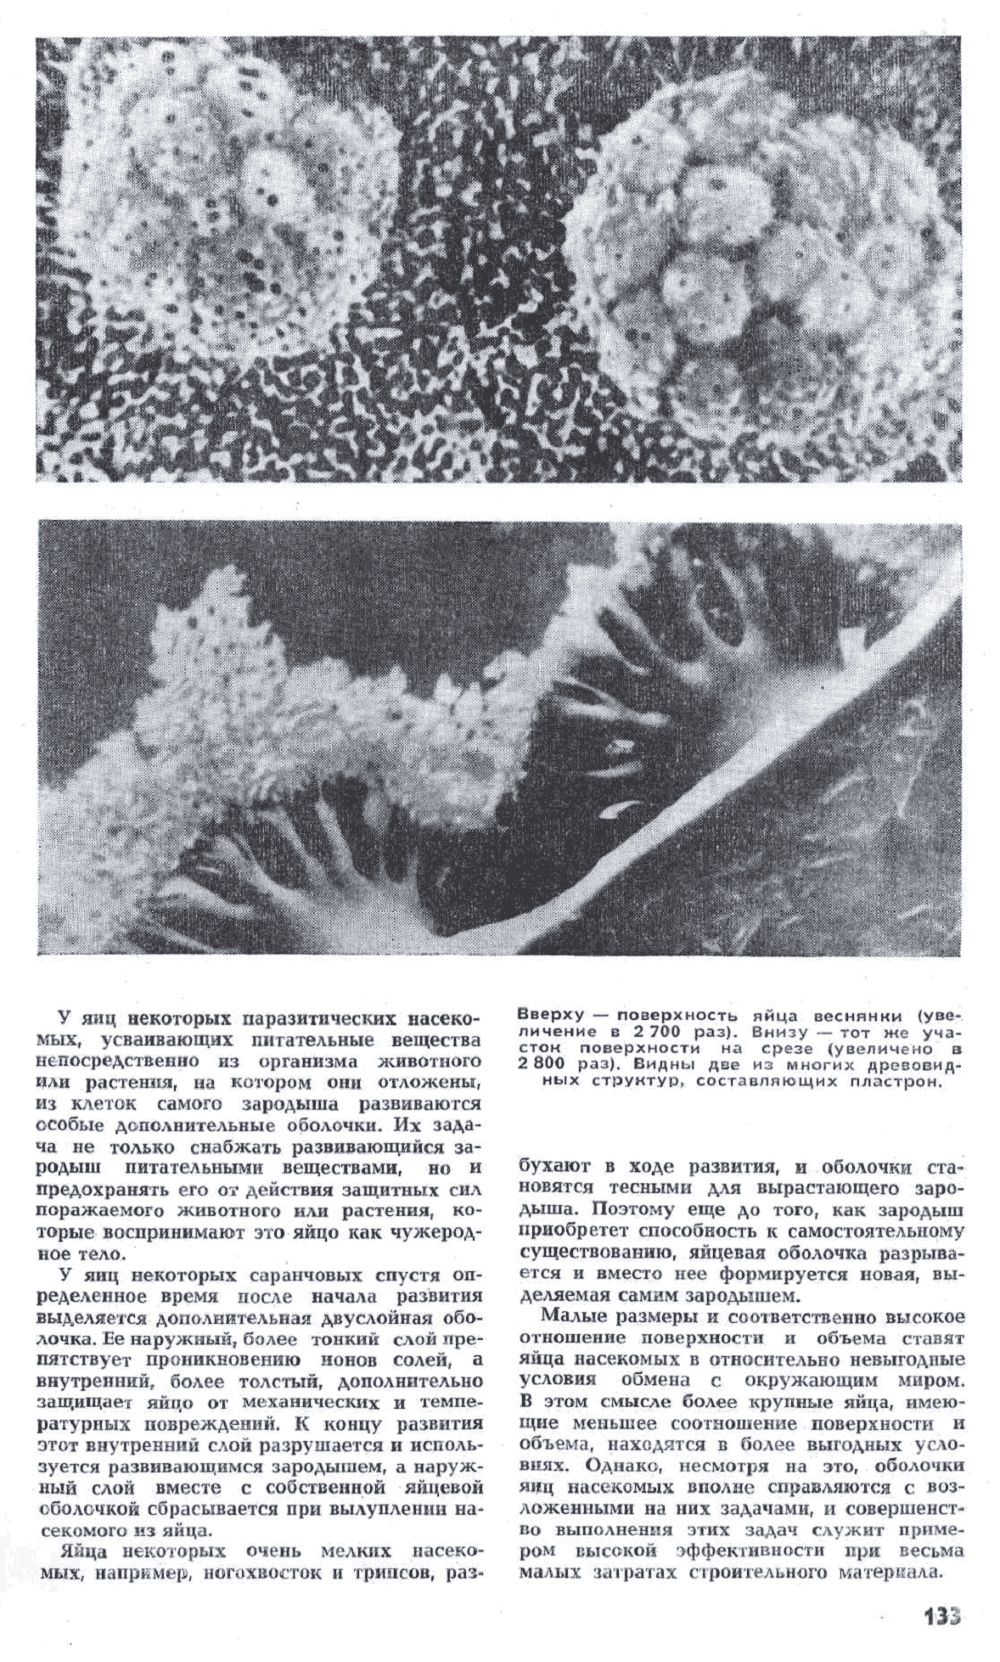 Маленькие секреты насекомых. Ю. Захваткин. Наука и жизнь, 1972, №5, с.130-133. Фотокопия №4